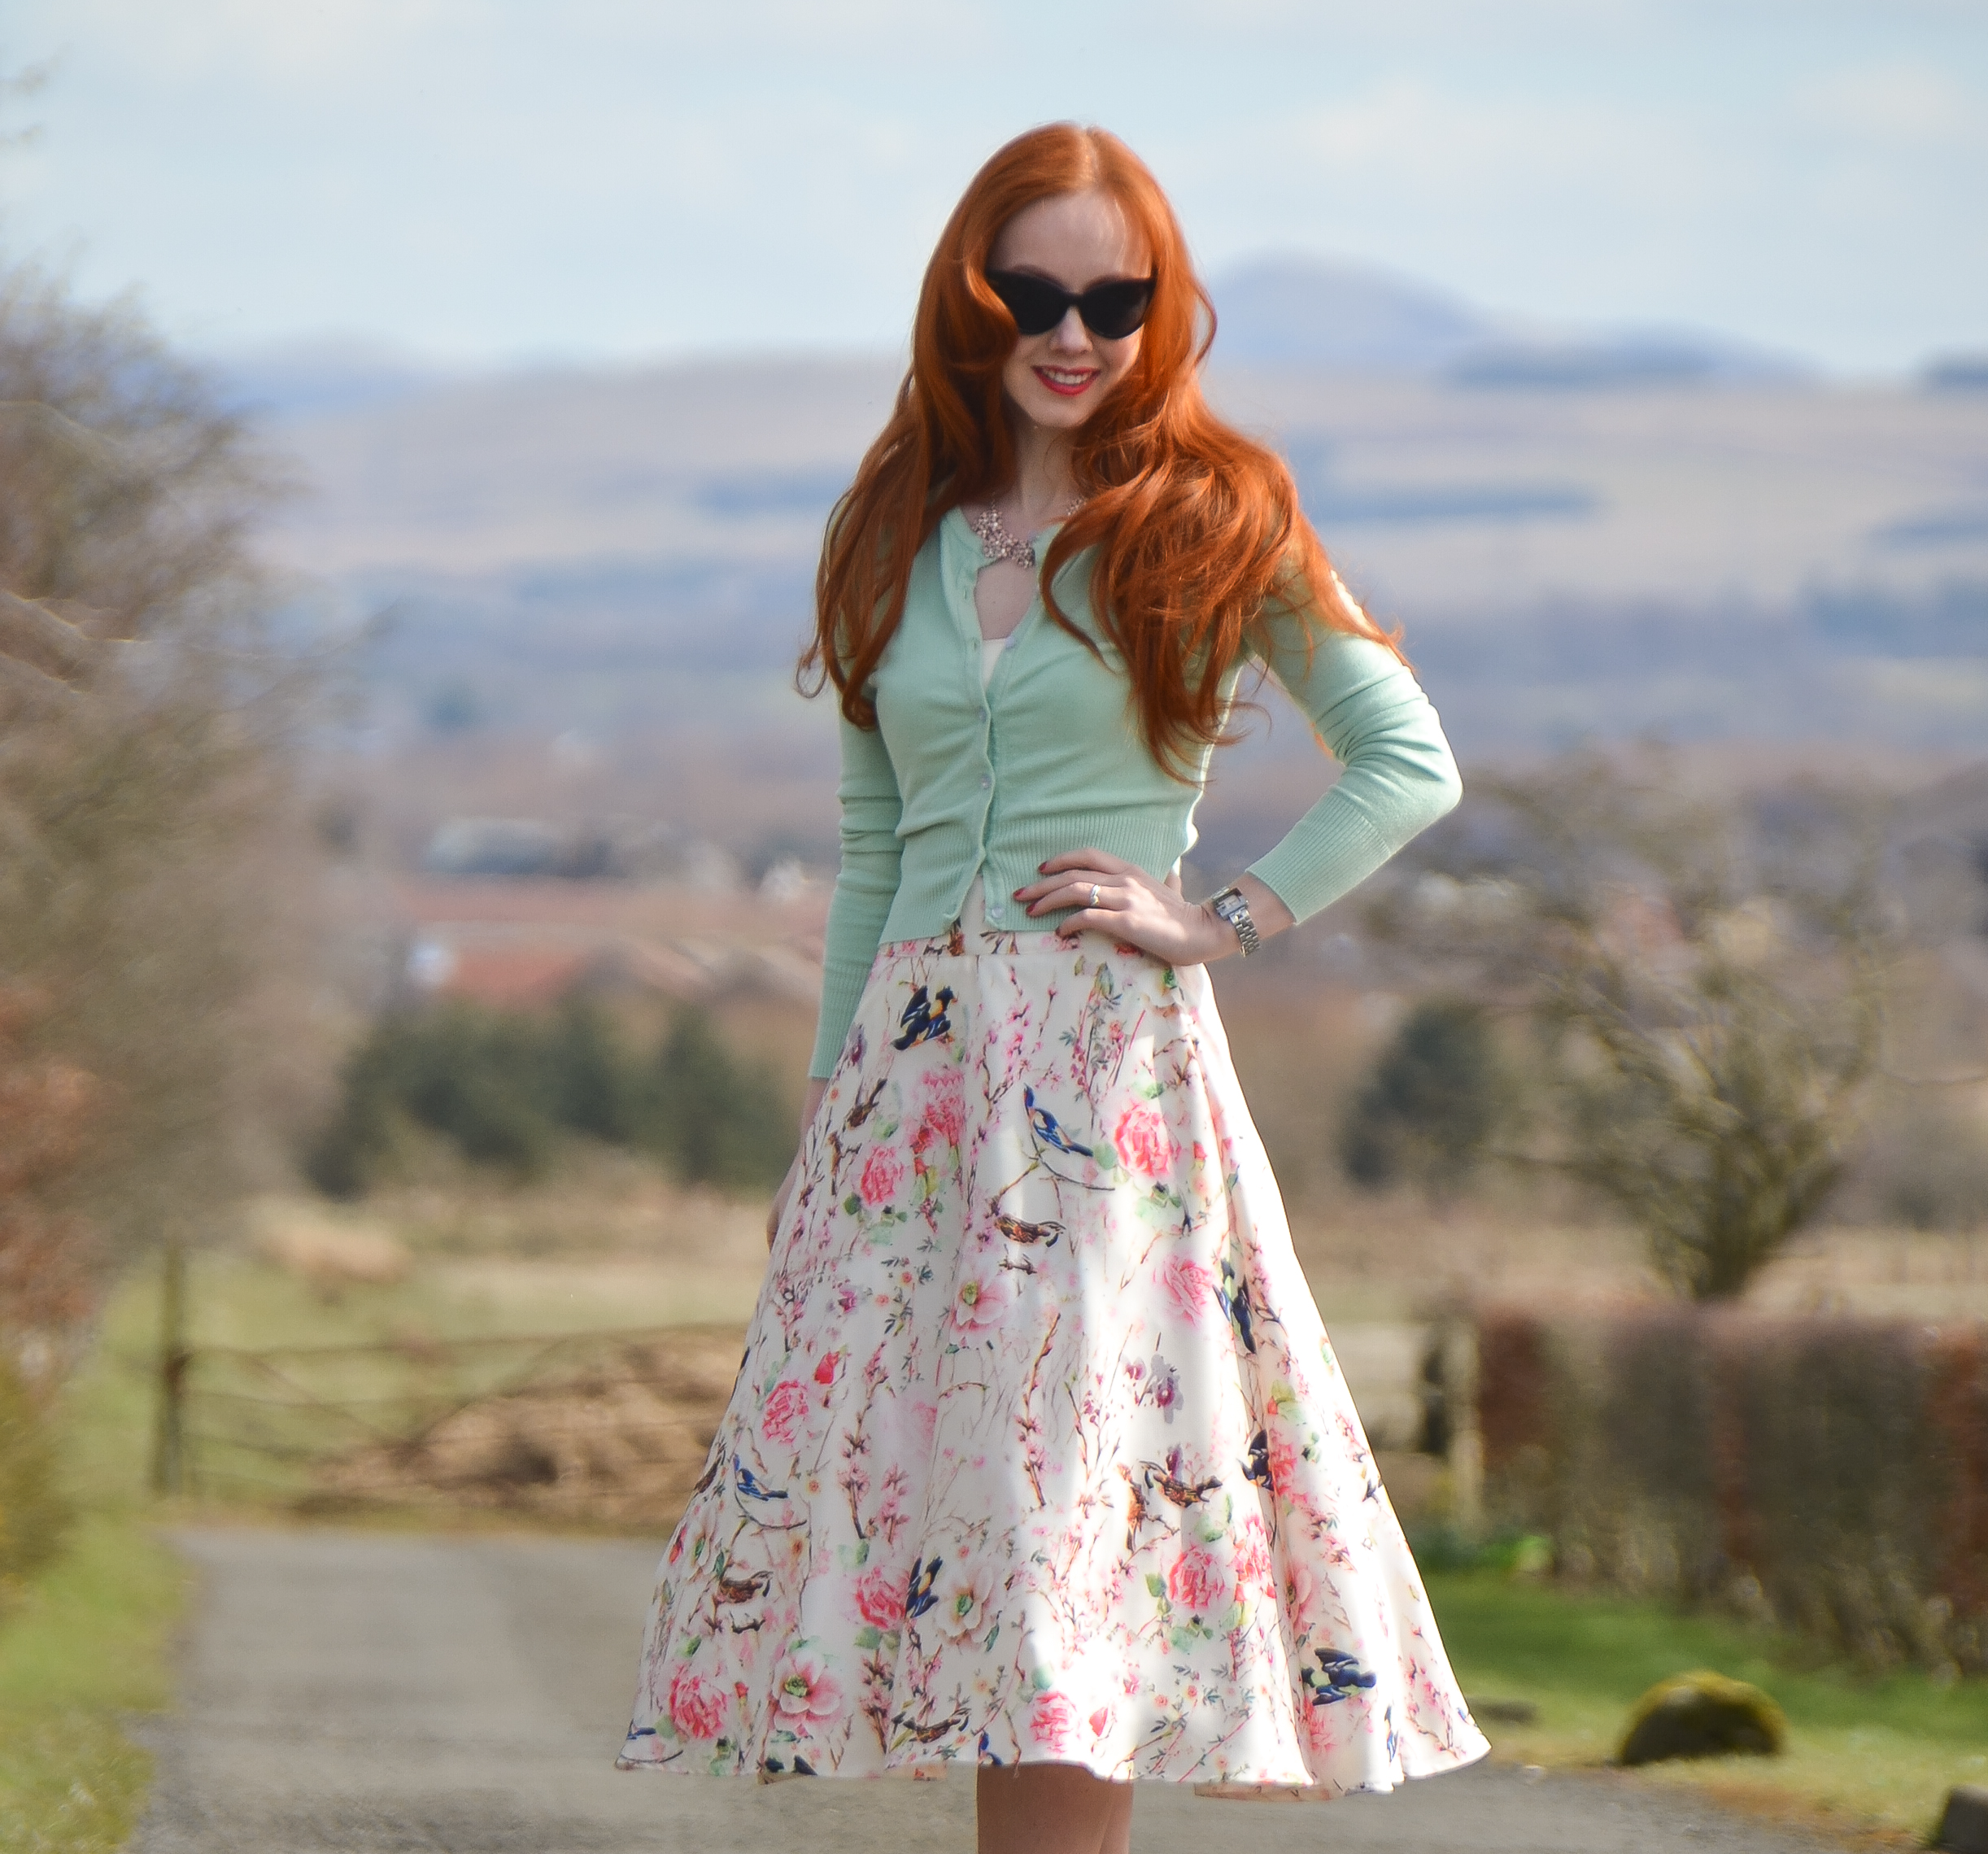 vintage floral skirt